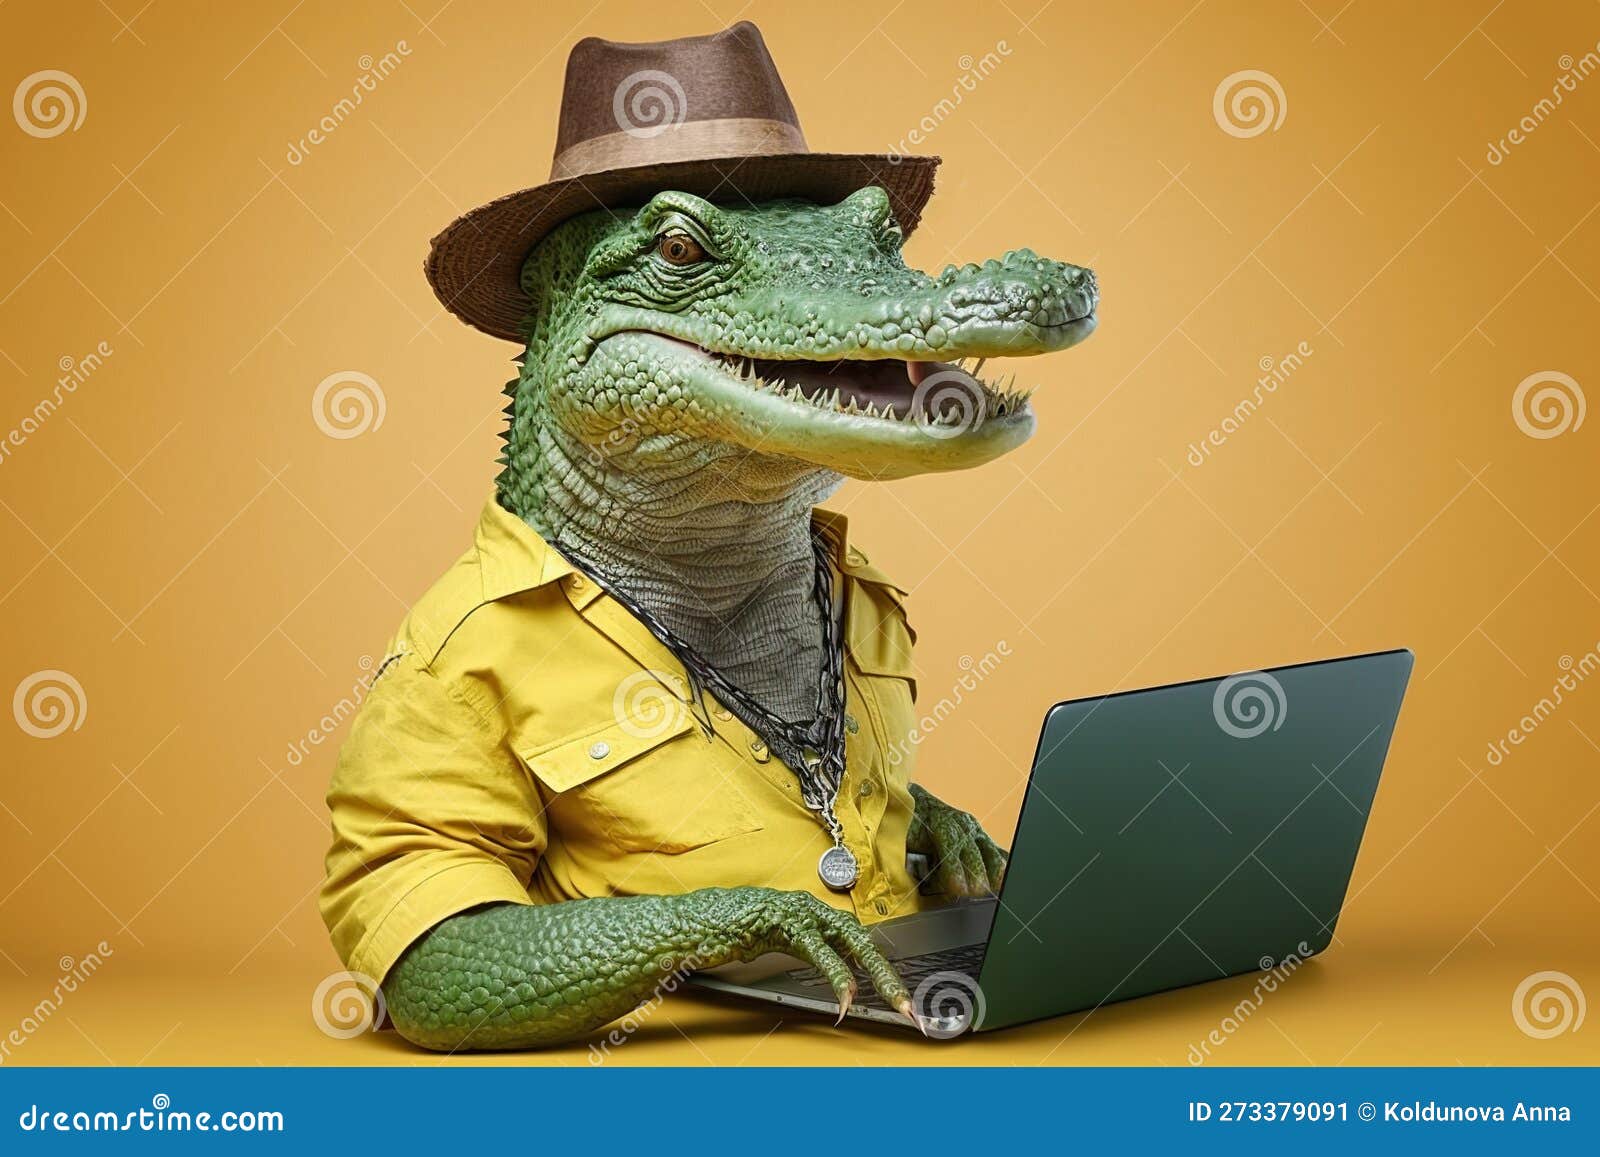 Crocodile Cloth® on LinkedIn: #crocodilecloth #getmessy